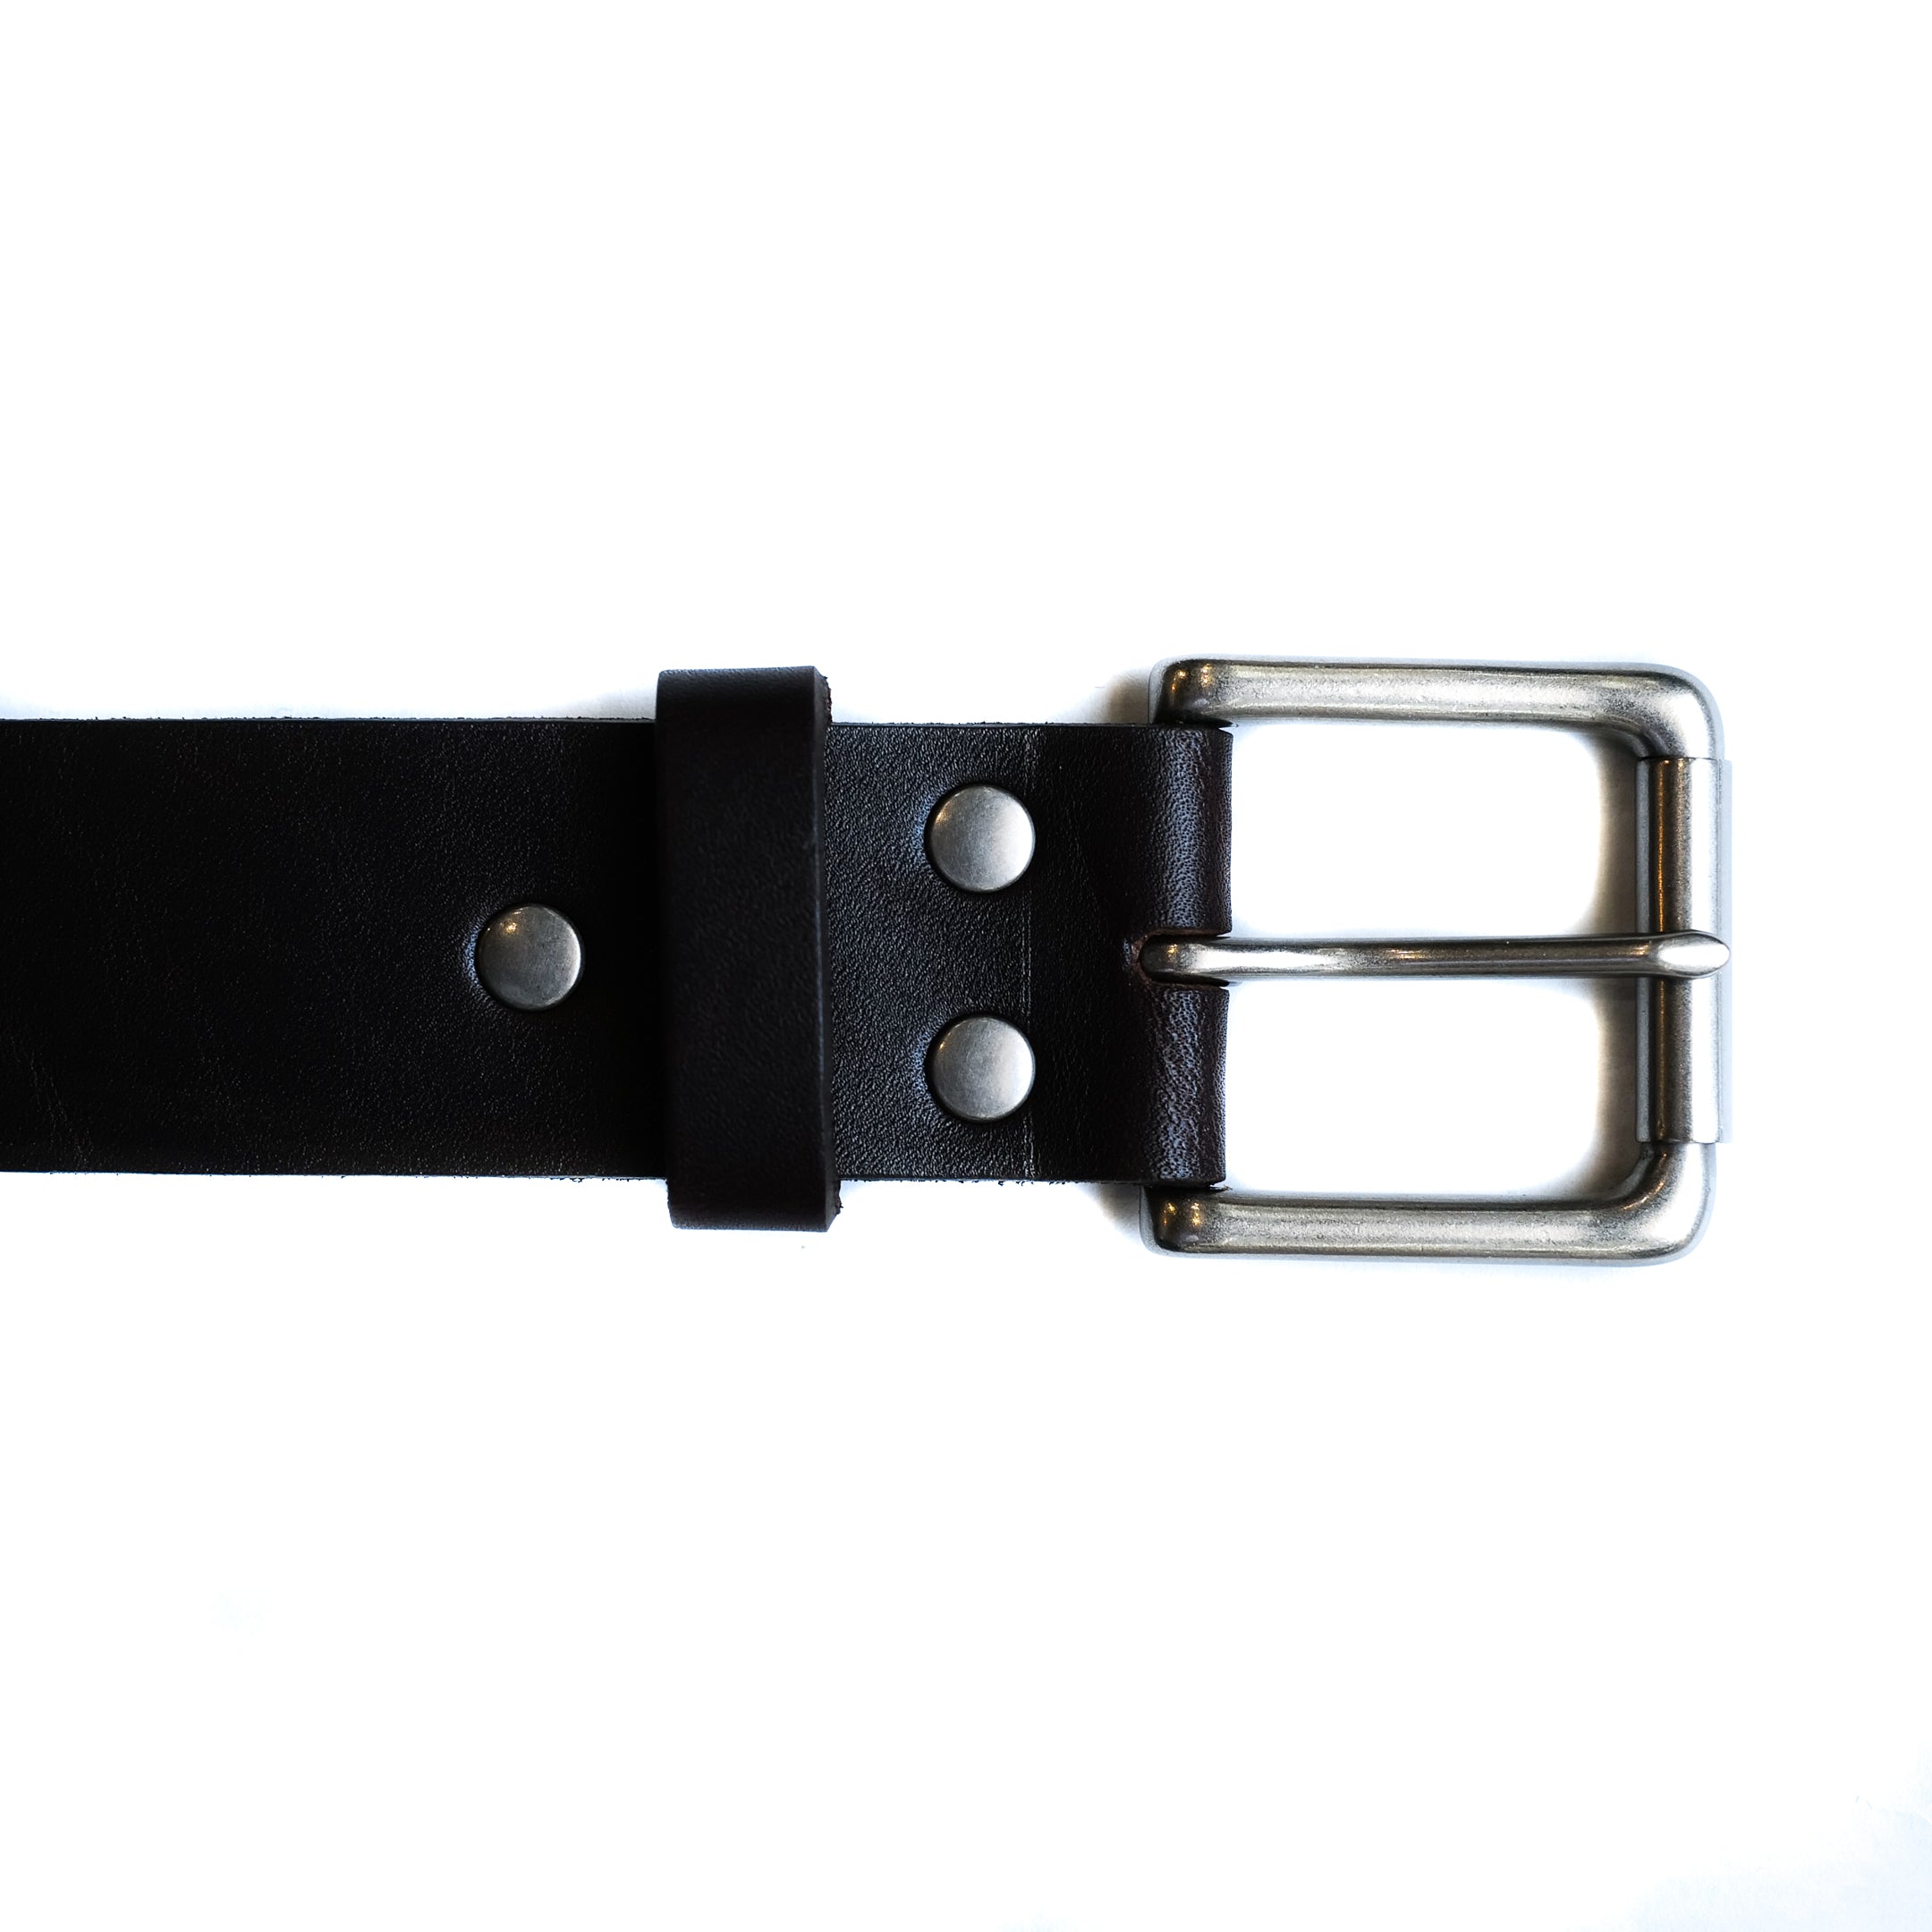 ButterScotch - 1.5" Roller Bar Belt - Black & Nickel